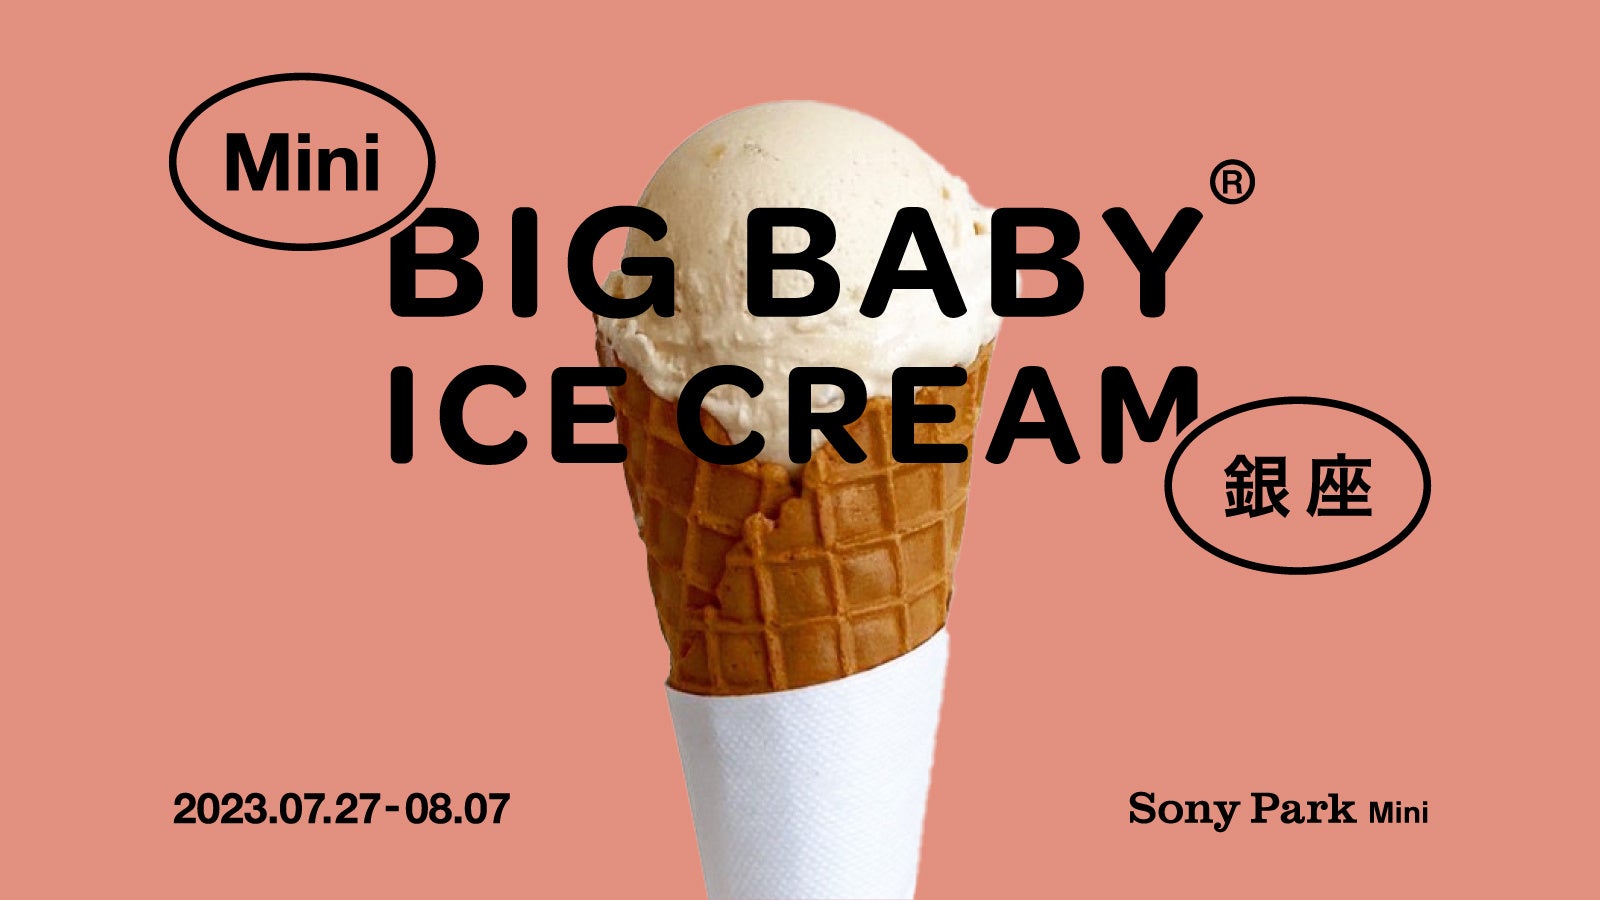 「BIG BABY ICE CREAM」とのコラボで限定オリジナルアイスクリームを販売！ 『Mini BIG BABY ICE CREAM 銀座』